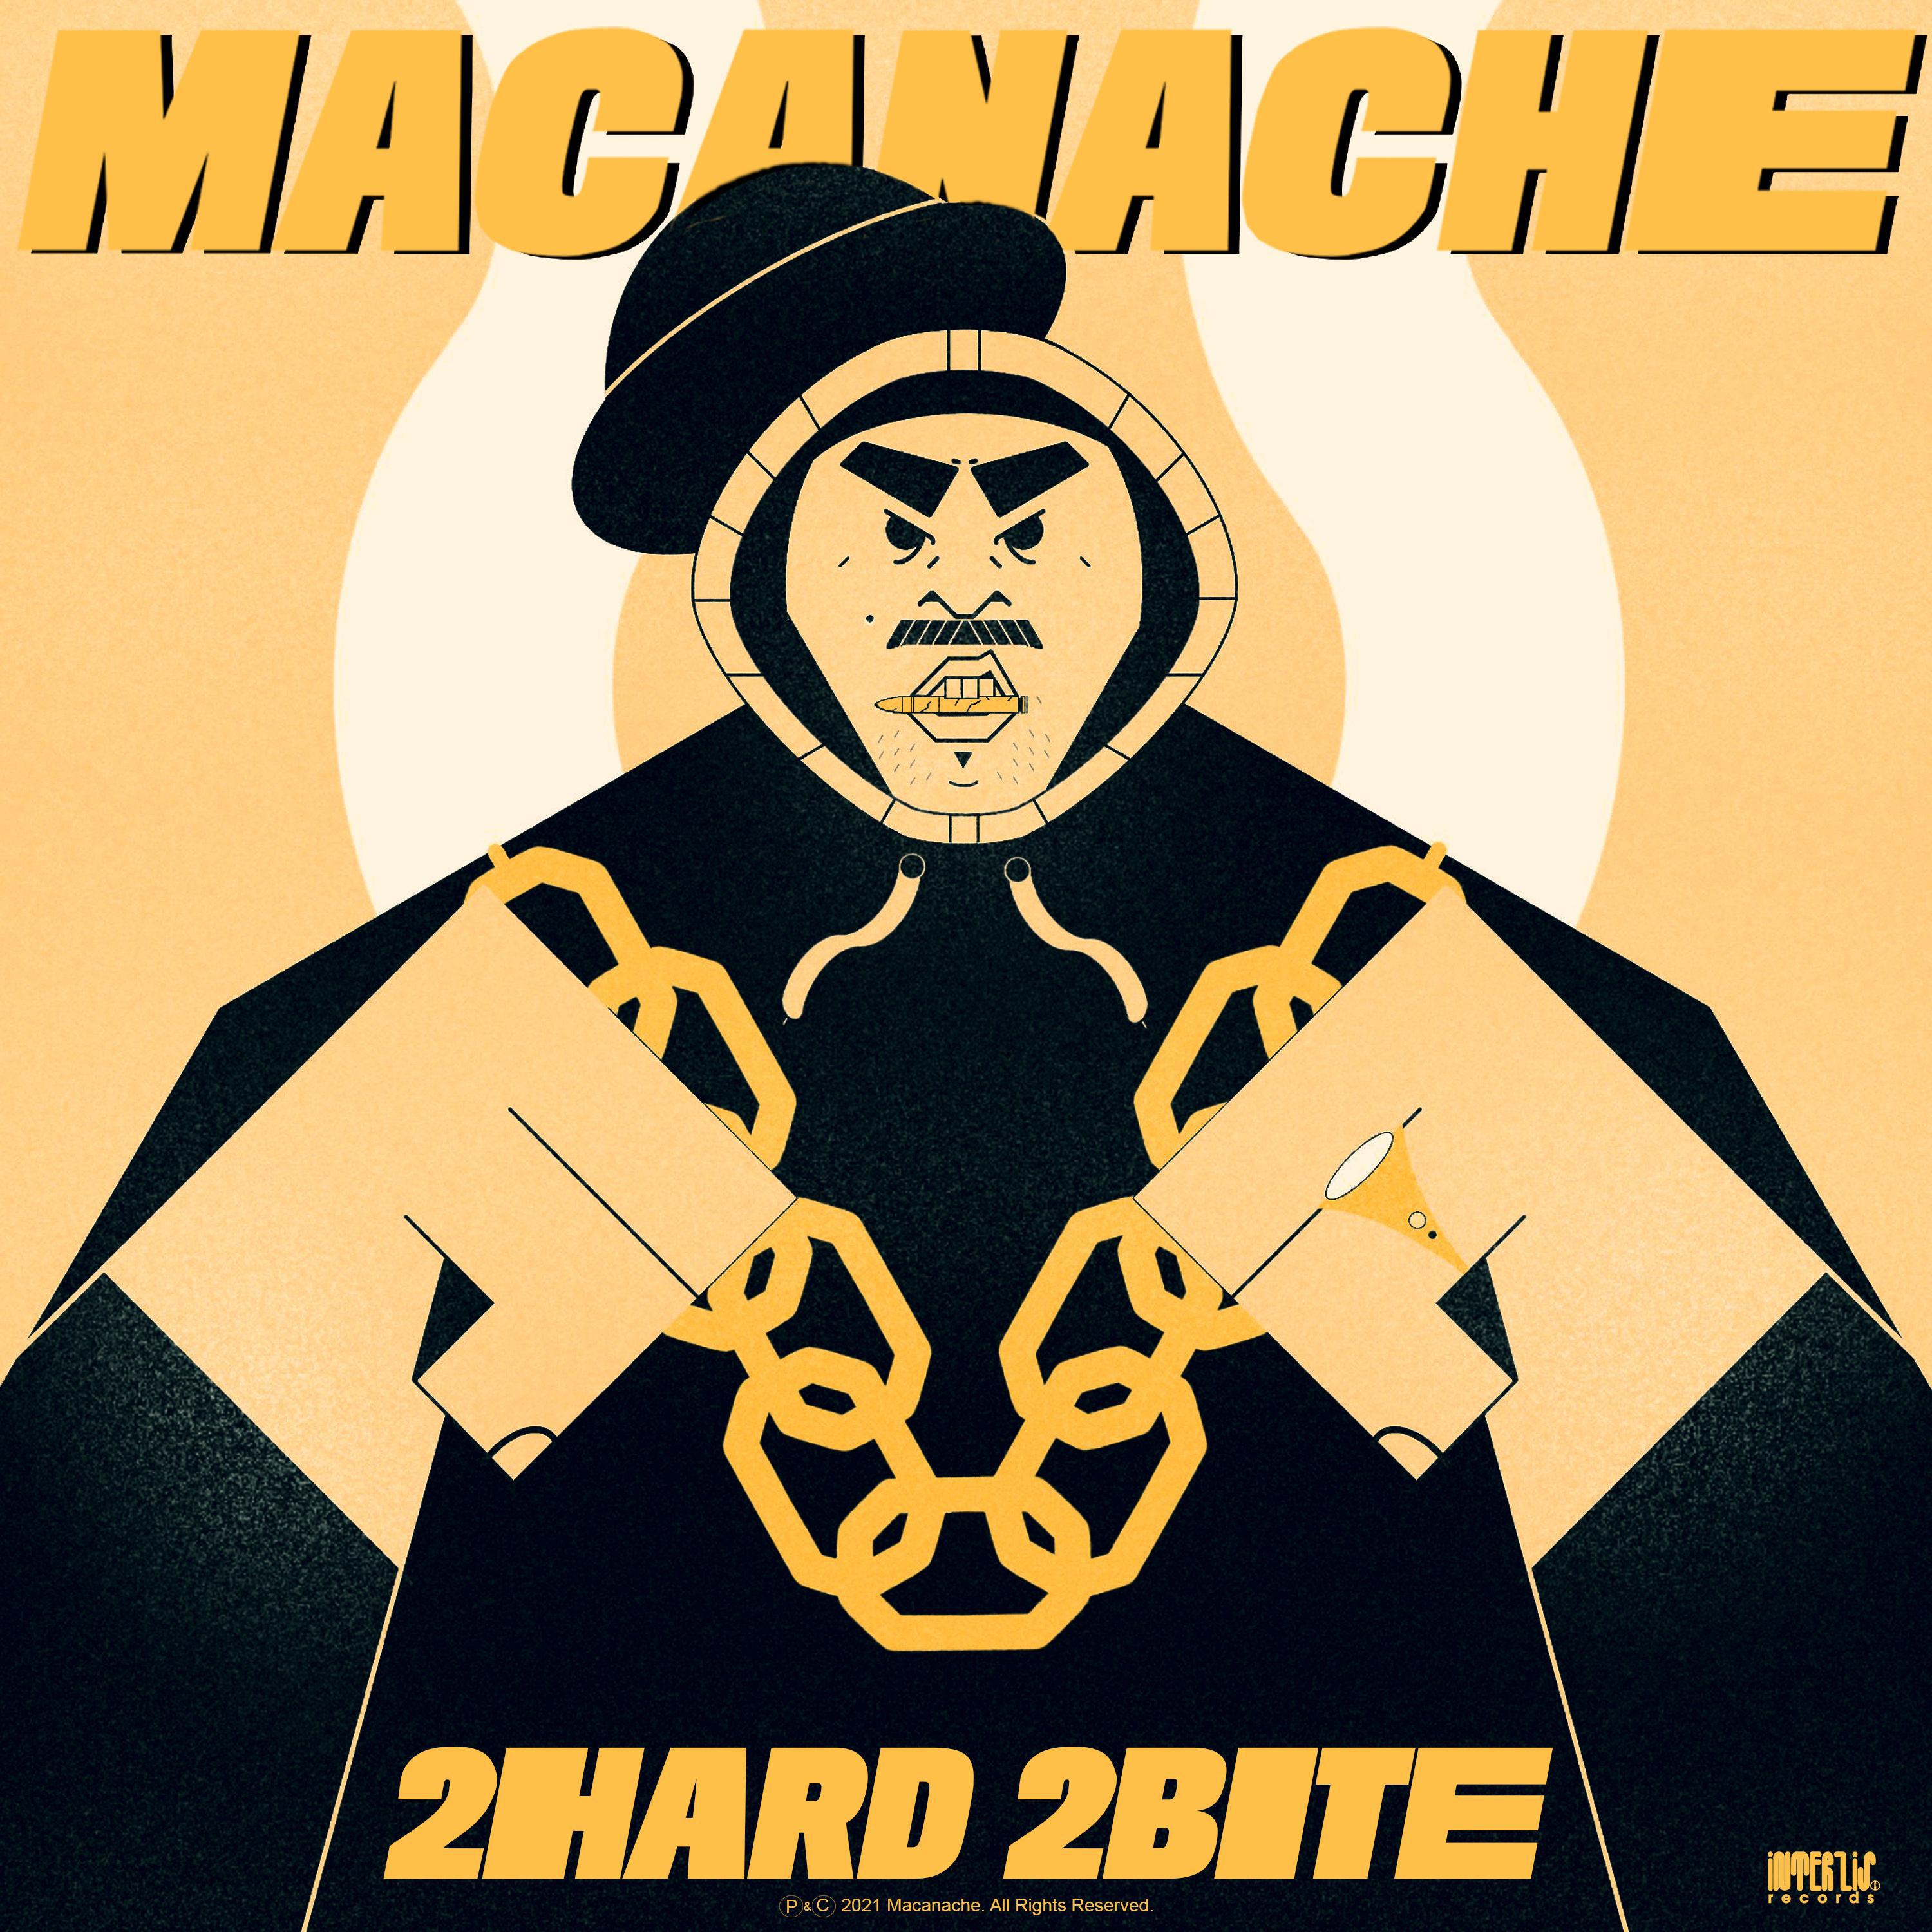 Macanache - Lets Get It